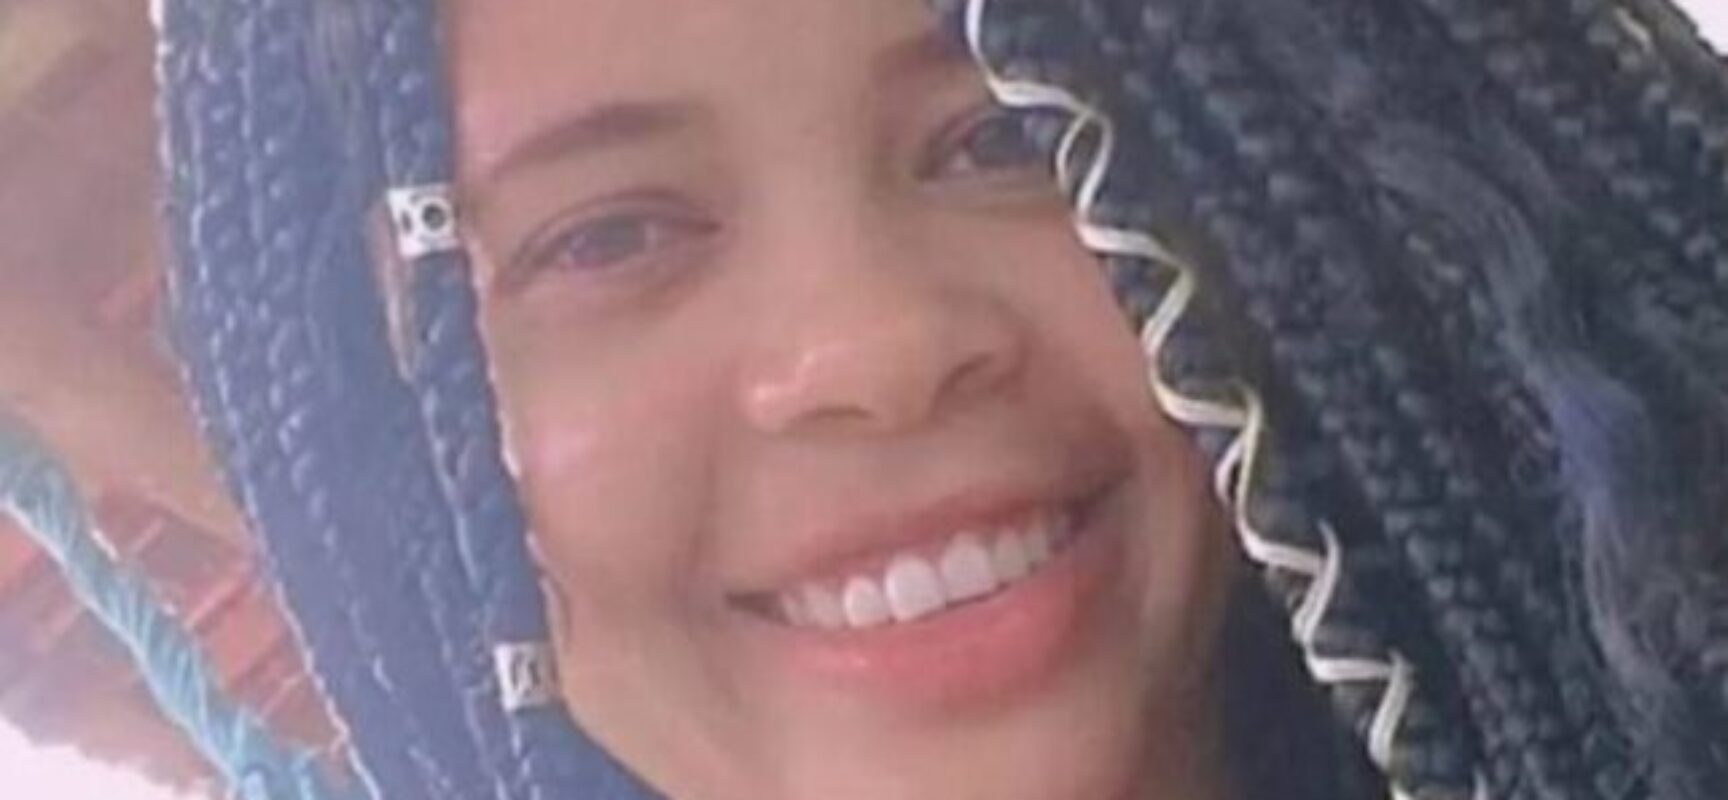 Jovem desaparecida desde o mês de maio em Trancoso é encontrada morta